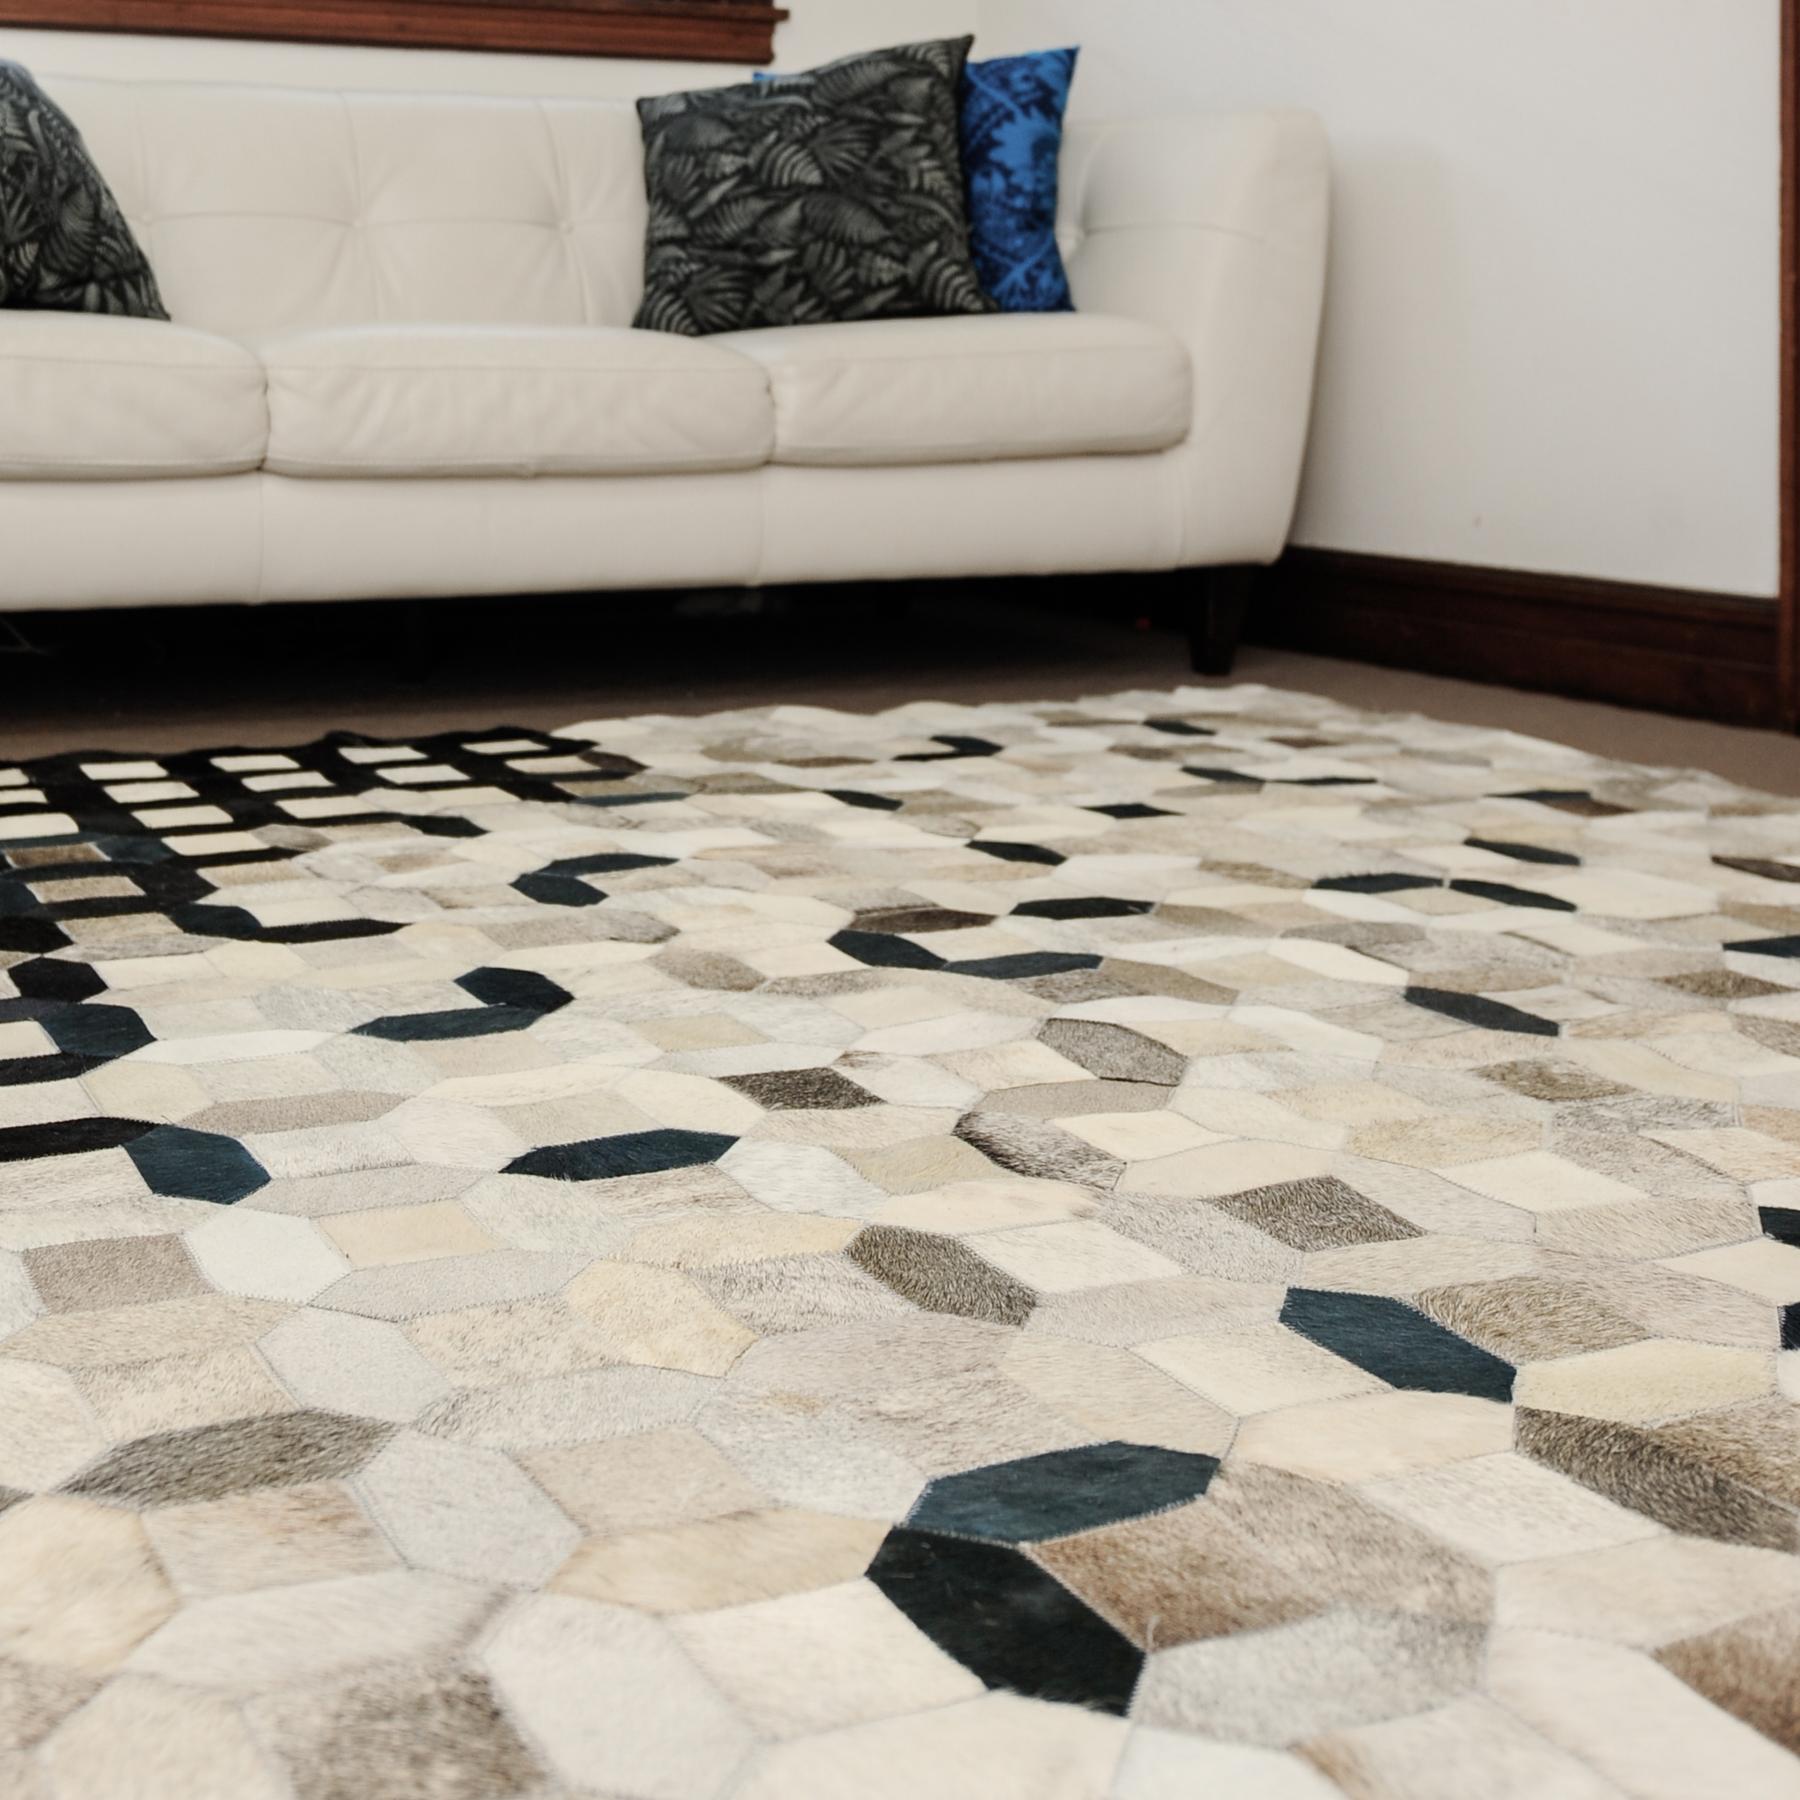 Pakistani Black, gray tessellation Trellis Cowhide Area Floor Rug Large  For Sale